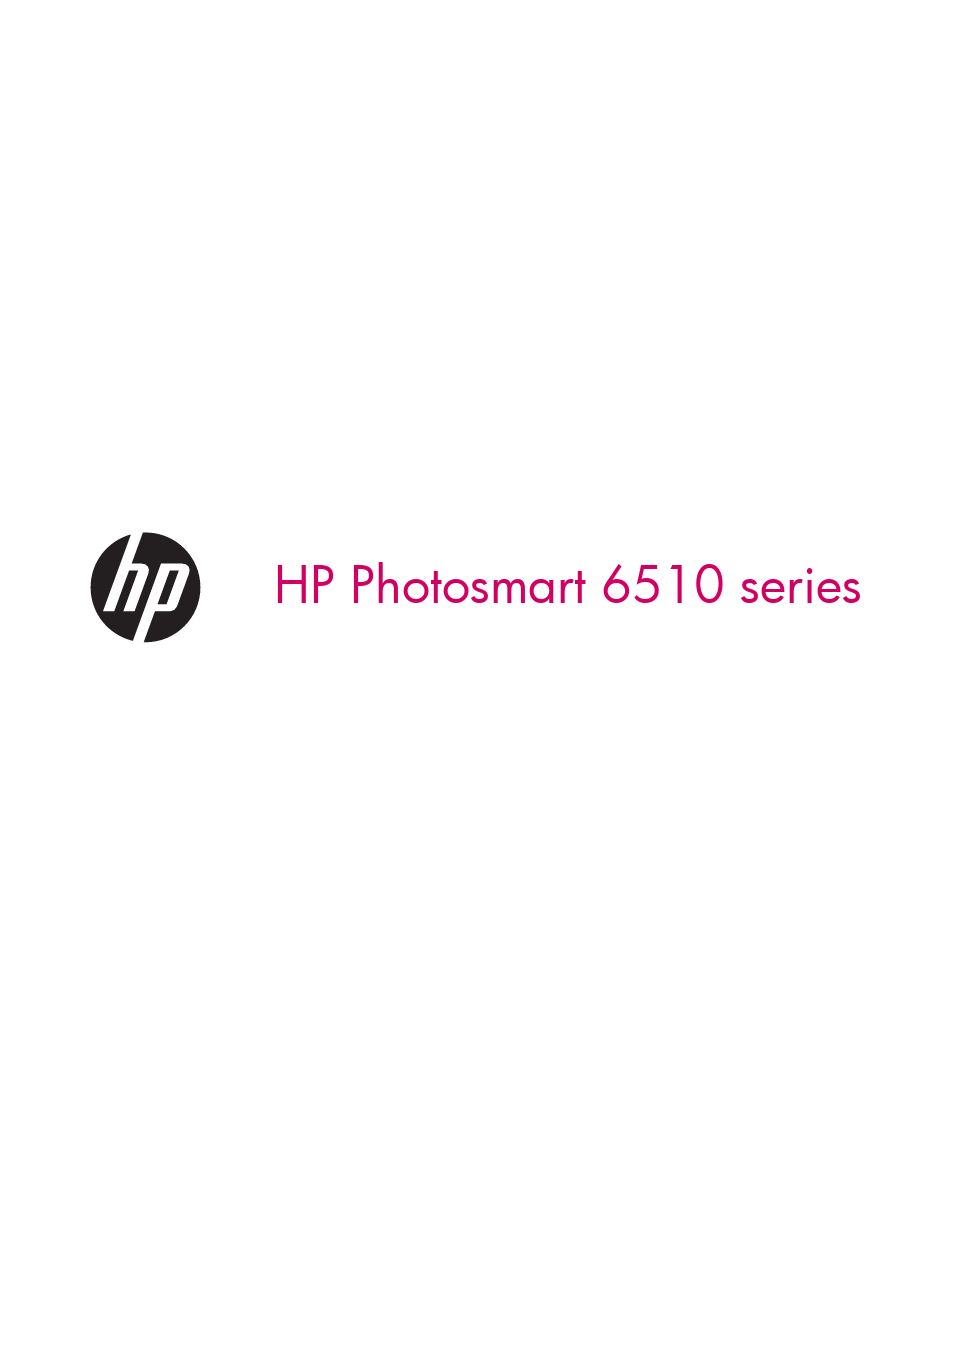 Mode d'emploi HP PHOTOSMART PS6510